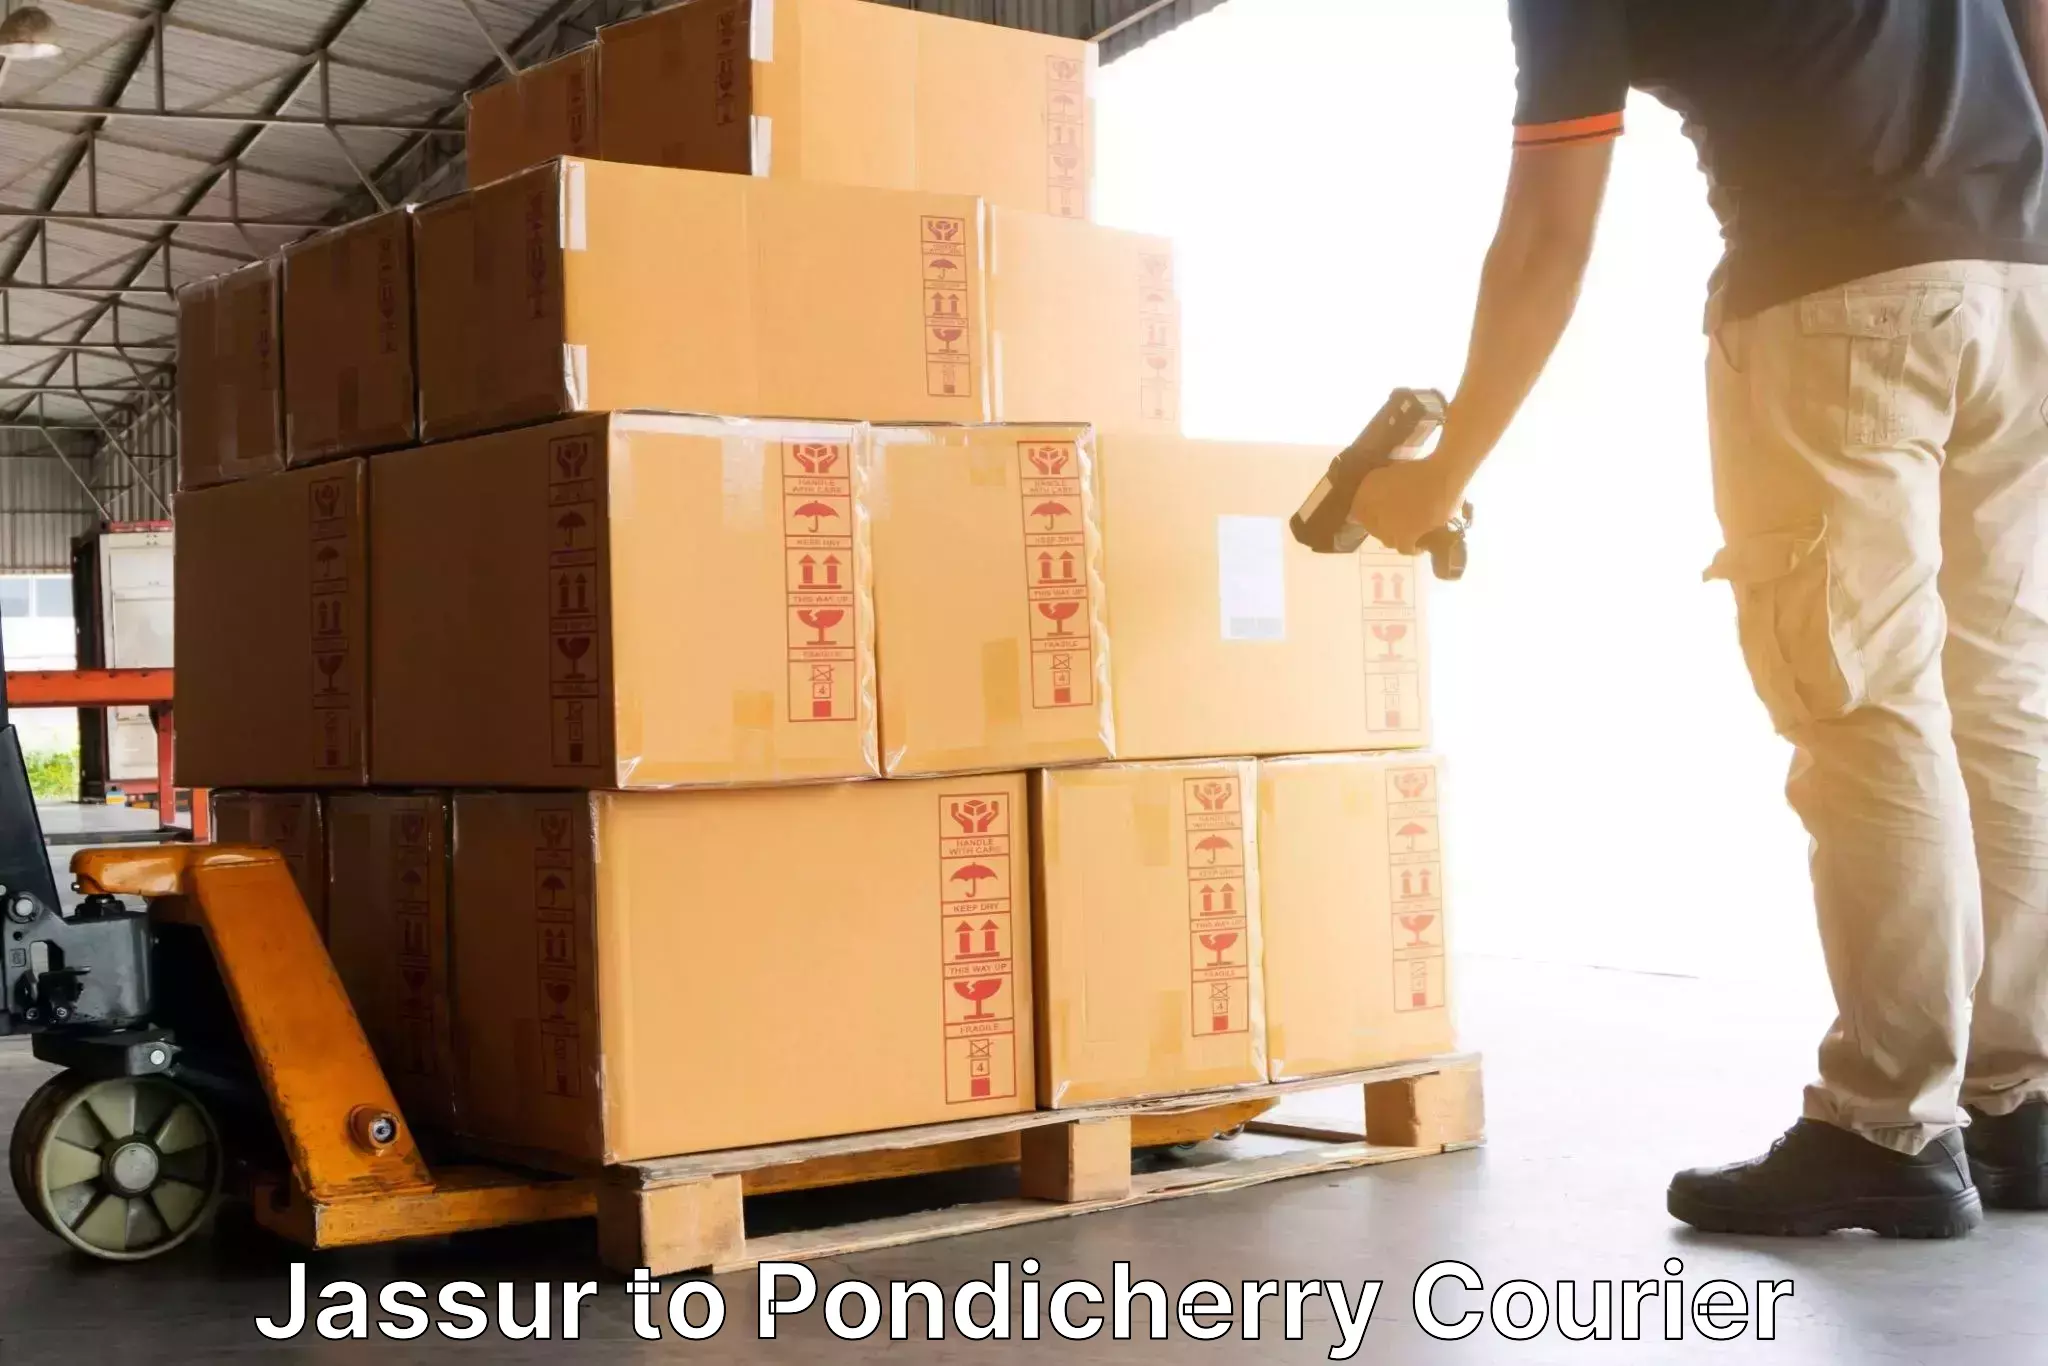 Efficient logistics management in Jassur to Pondicherry